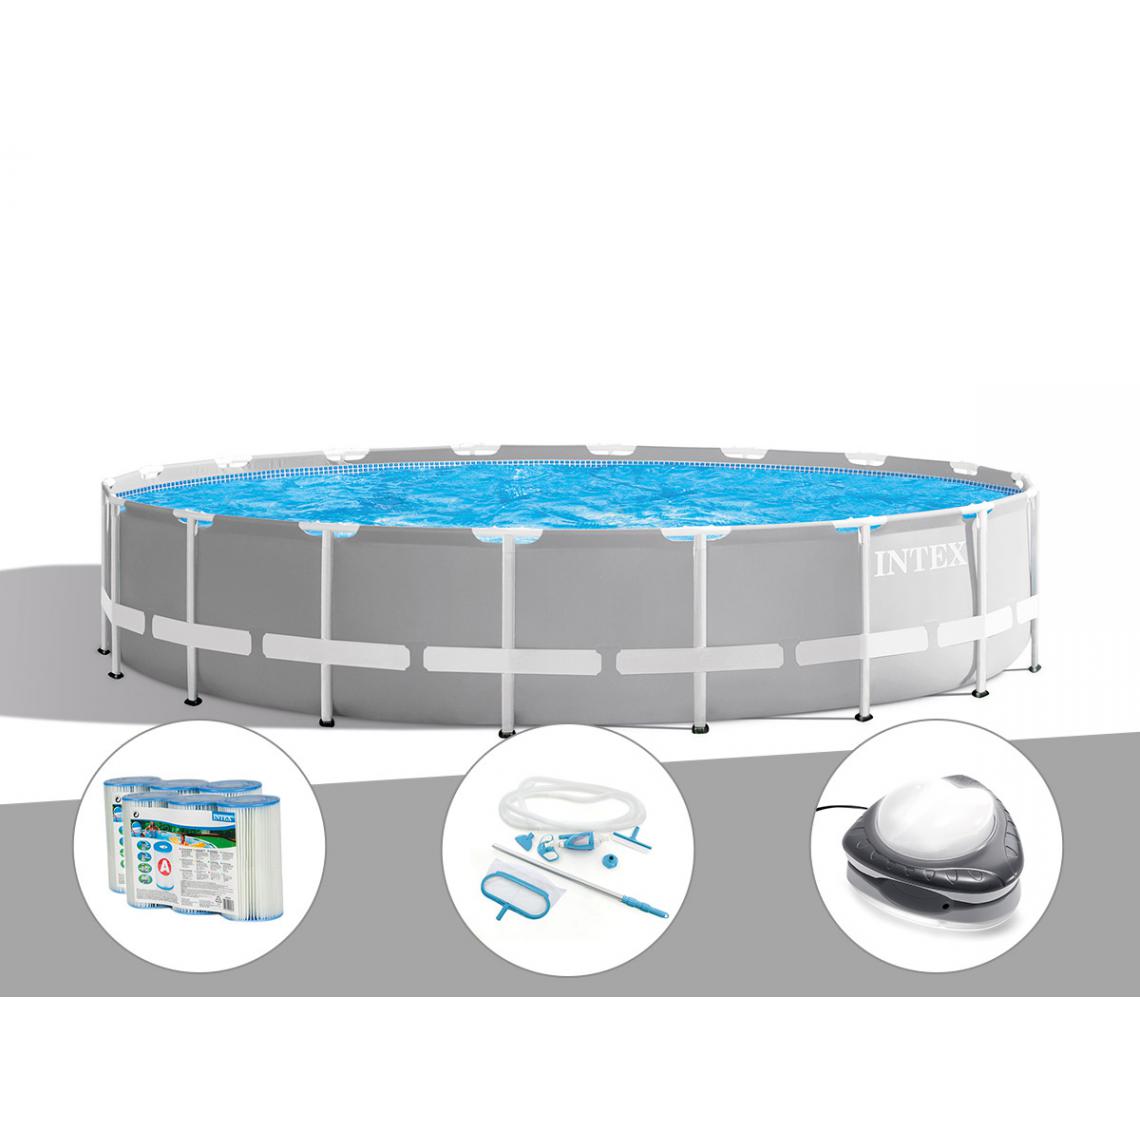 Intex - Kit piscine tubulaire Intex Prism Frame ronde 6,10 x 1,32 m + 6 cartouches de filtration + Kit d'entretien + Spot - Piscine Tubulaire